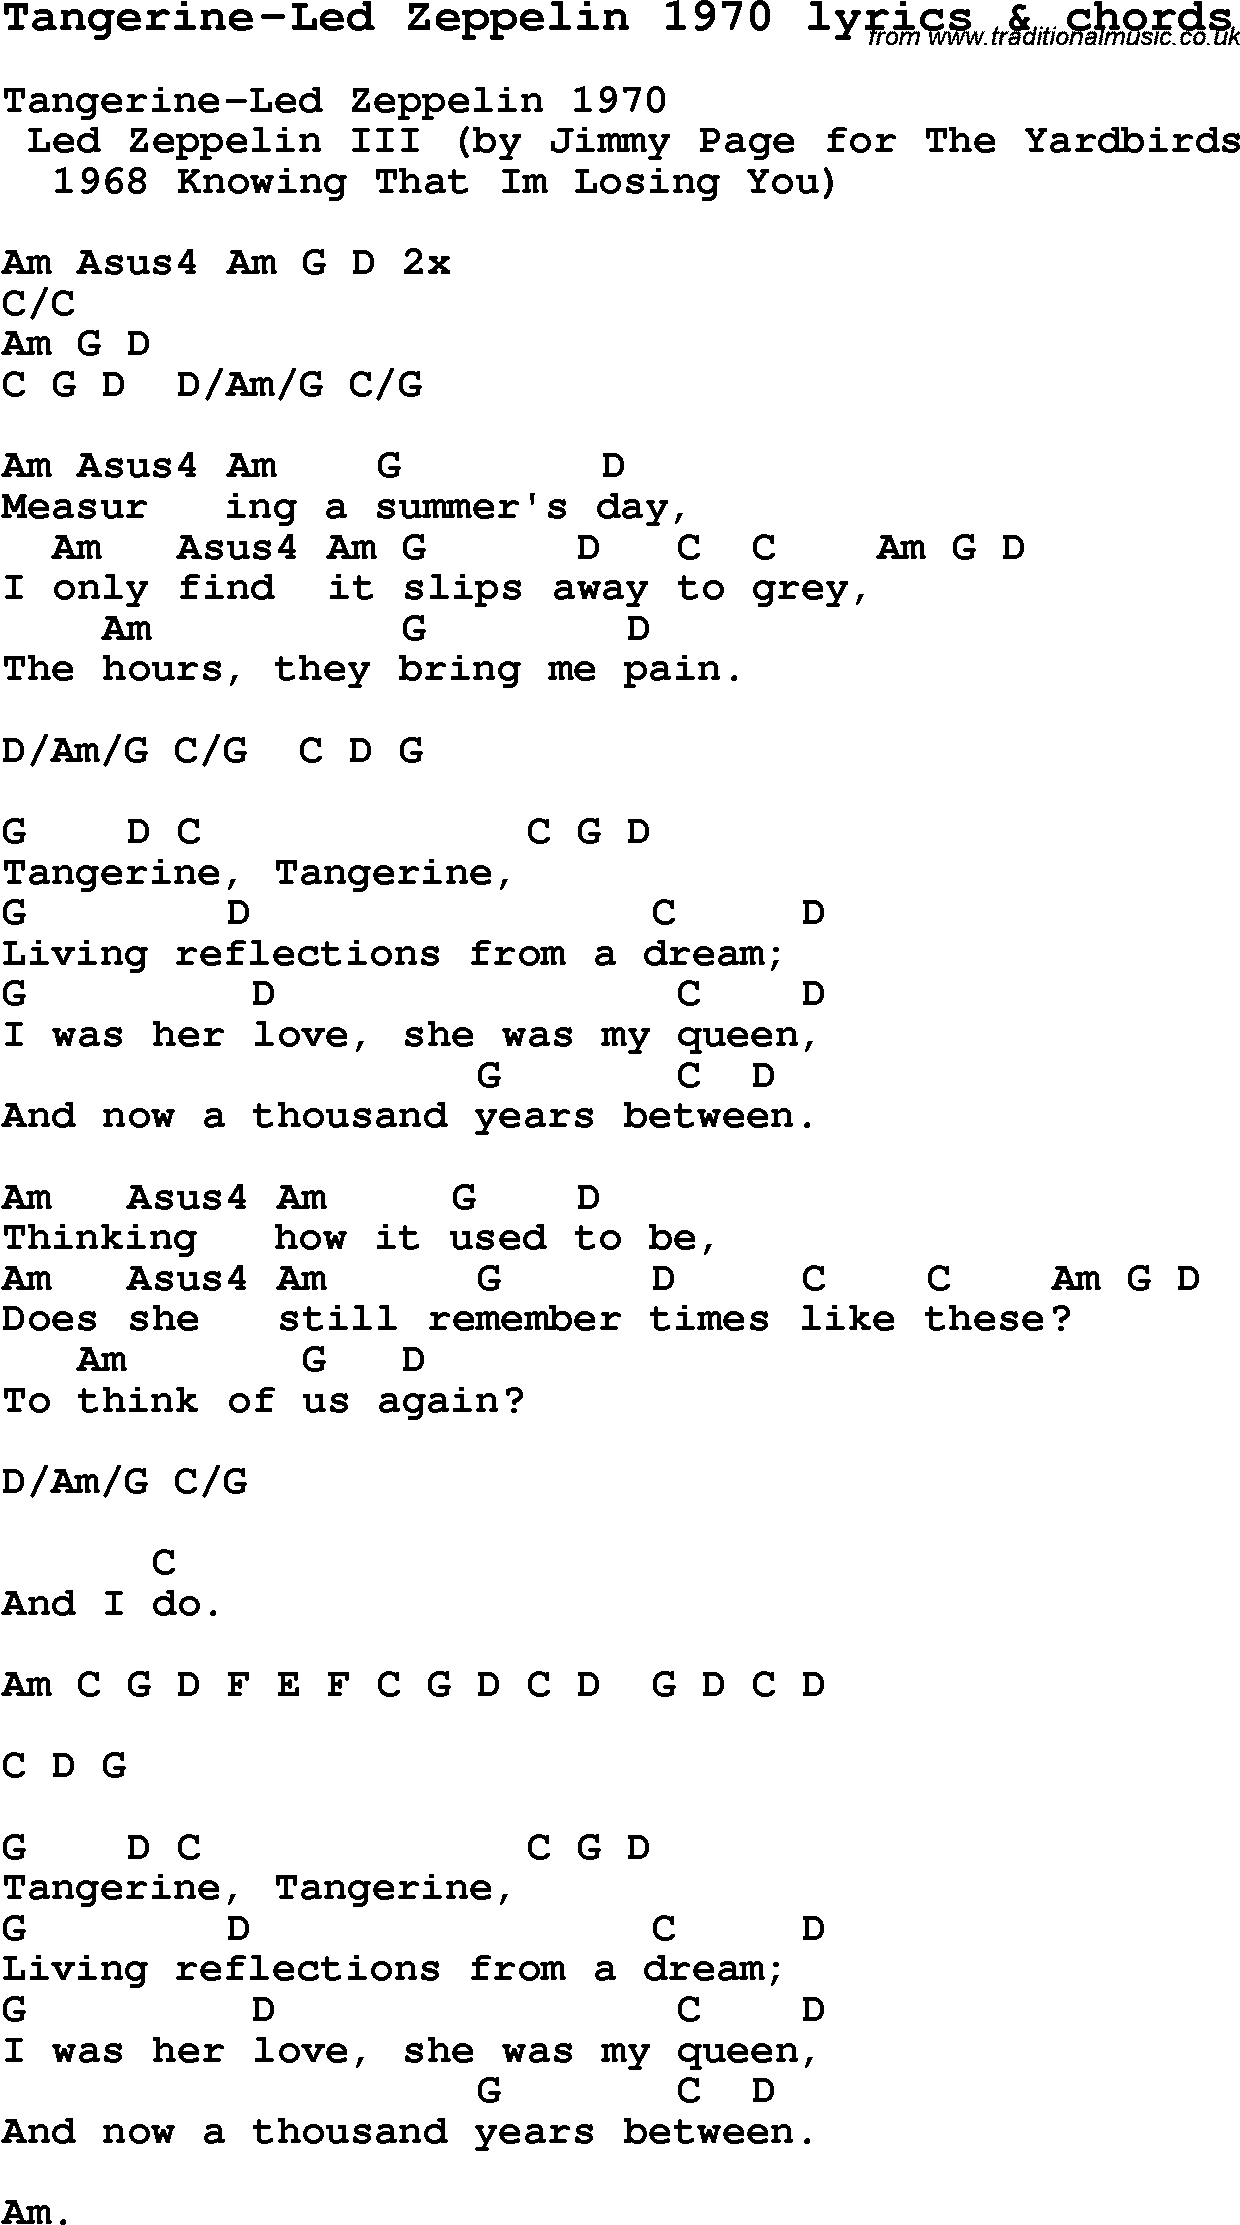 Love Song Lyrics for: Tangerine-Led Zeppelin 1970 with chords for Ukulele, Guitar Banjo etc.